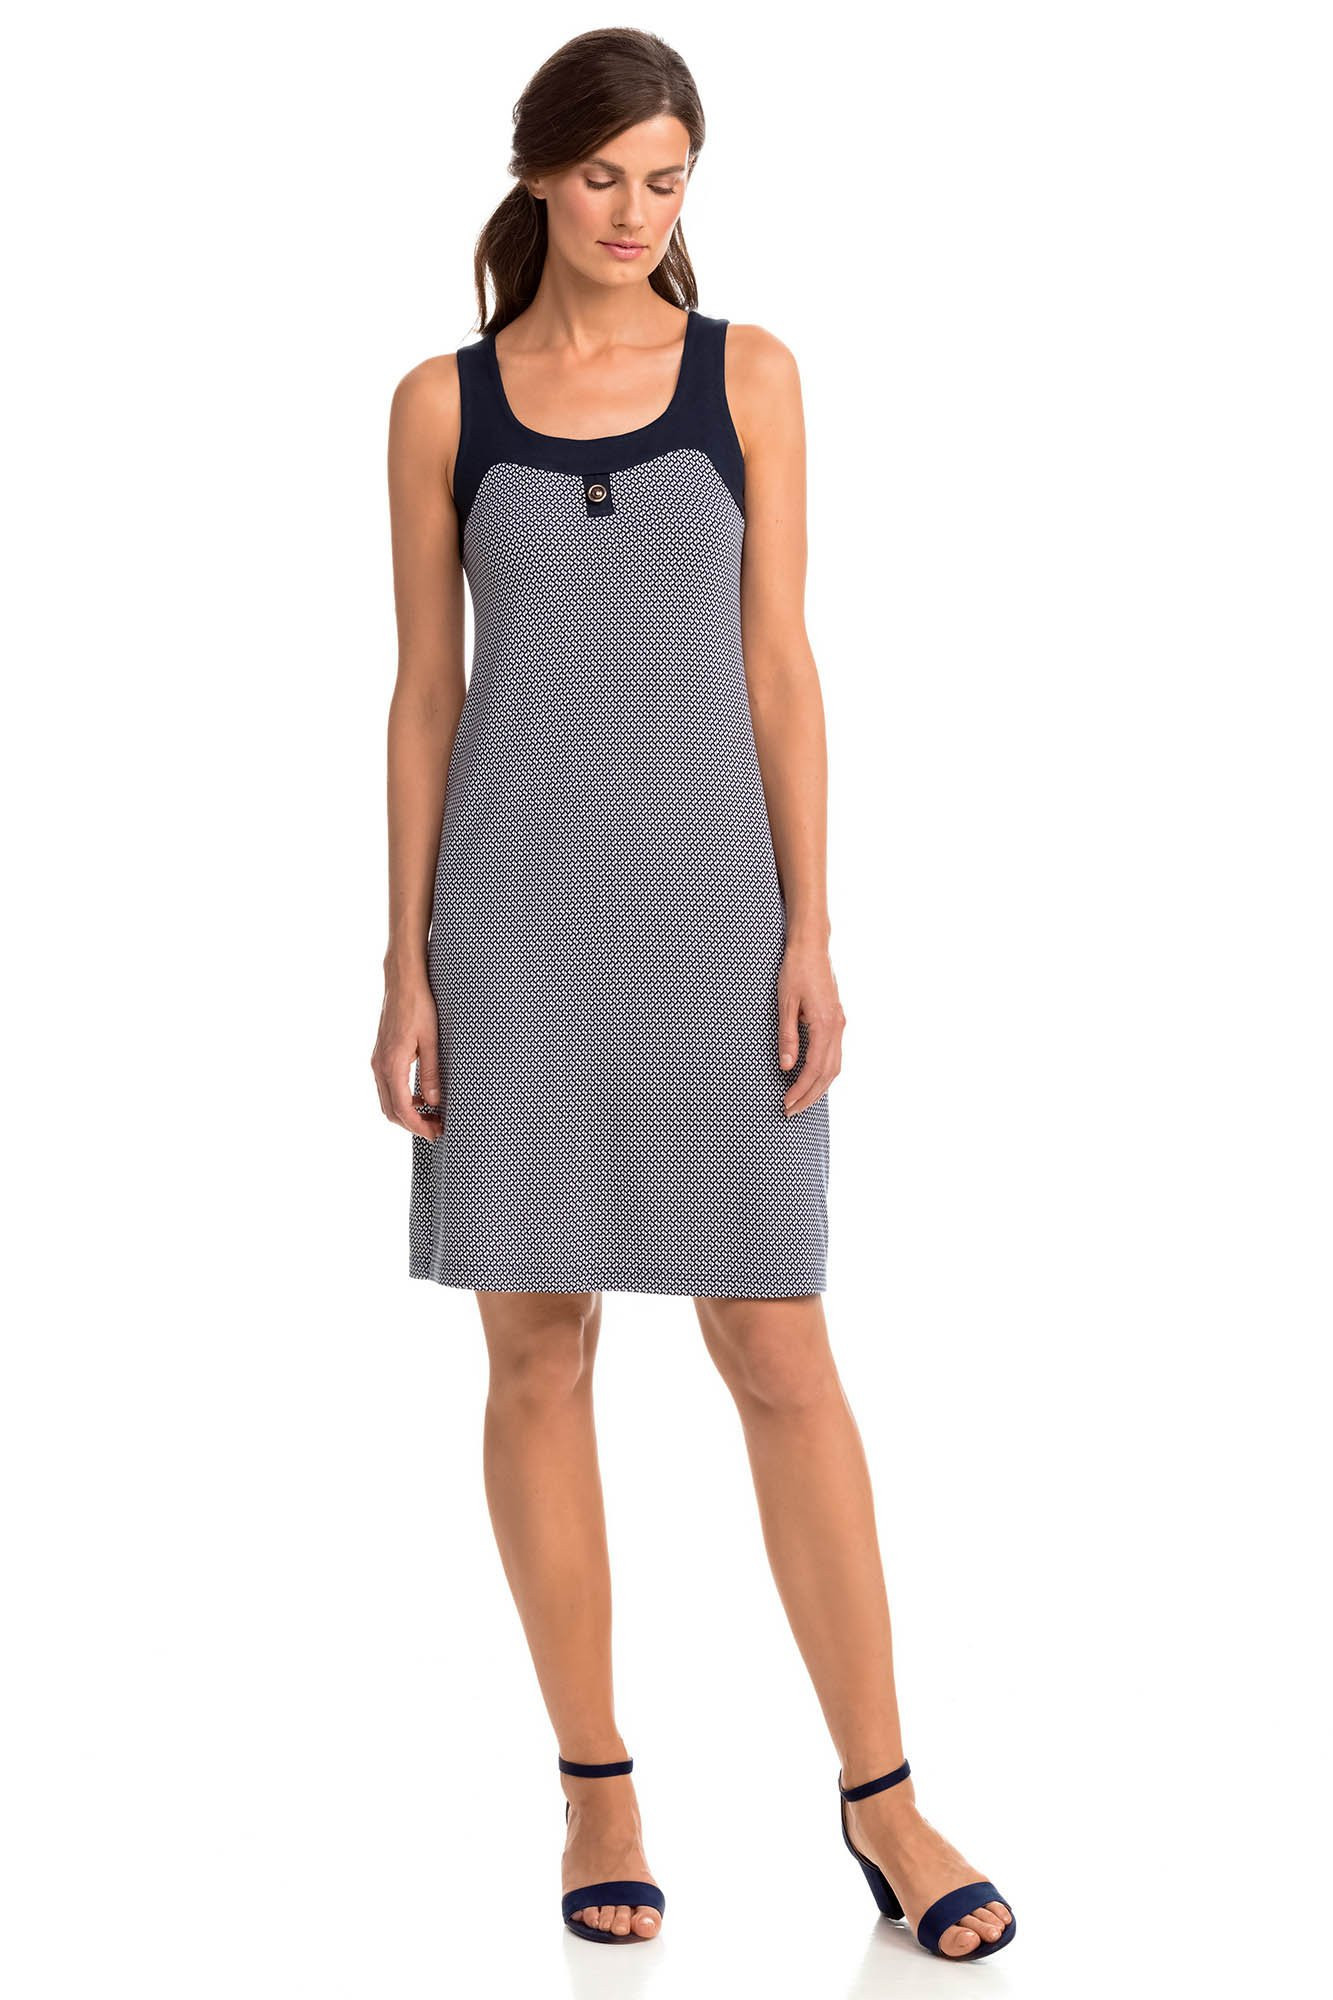 Elegantní vzorované dámské šaty 14455 - Vamp XL tmavě modrá s bílou